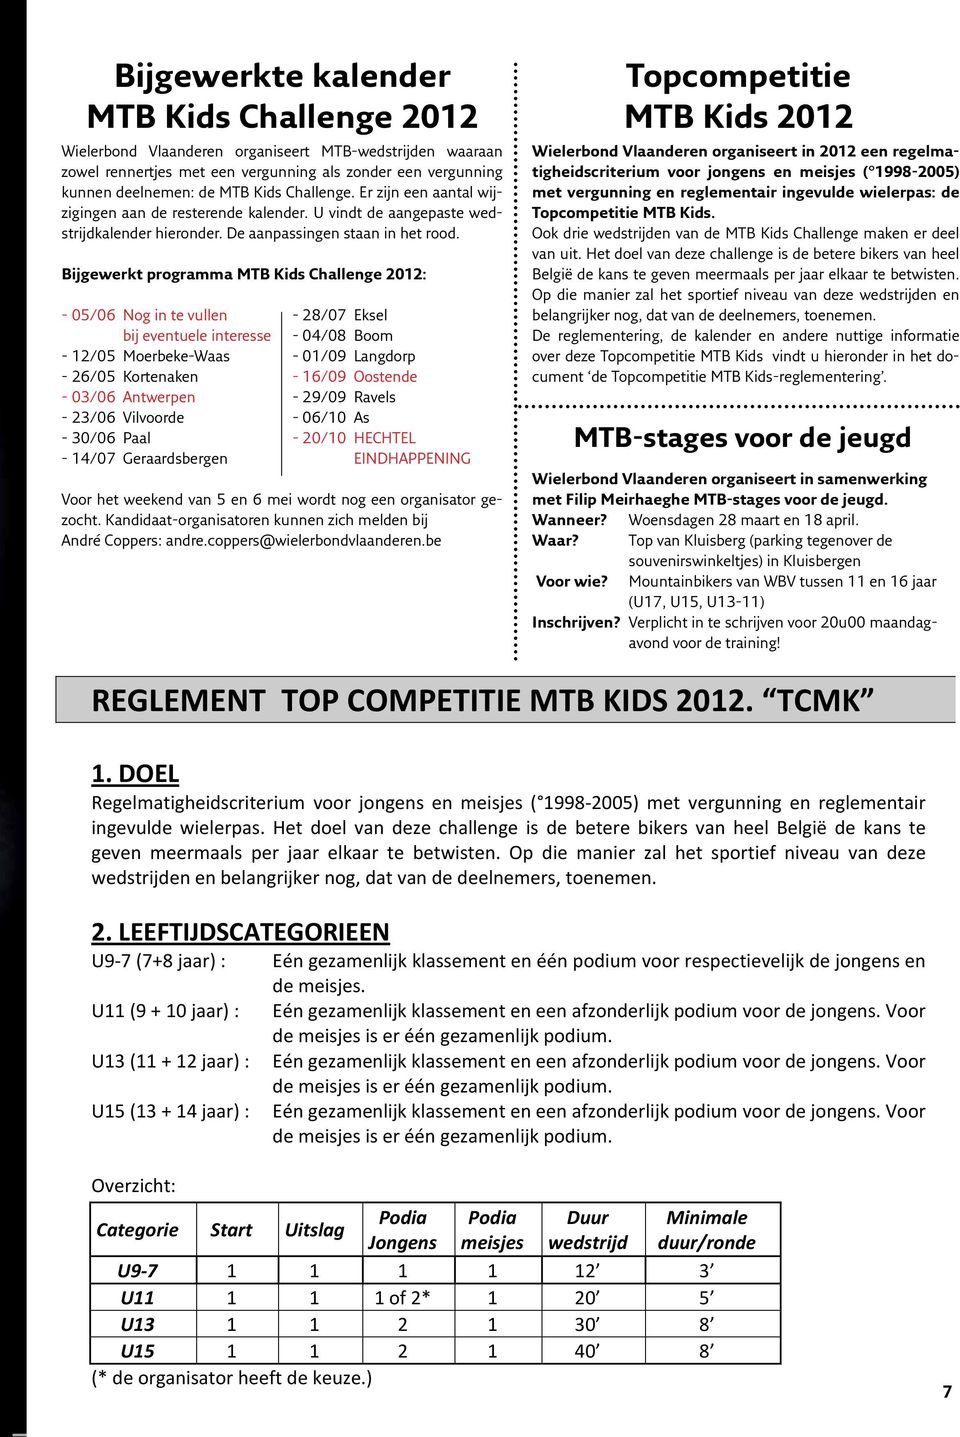 Bijgewerkt programma MTB Kids Challenge 2012: - 05/06 Nog in te vullen bij eventuele interesse - 12/05 Moerbeke-Waas - 26/05 Kortenaken - 03/06 Antwerpen - 23/06 Vilvoorde - 30/06 Paal - 14/07